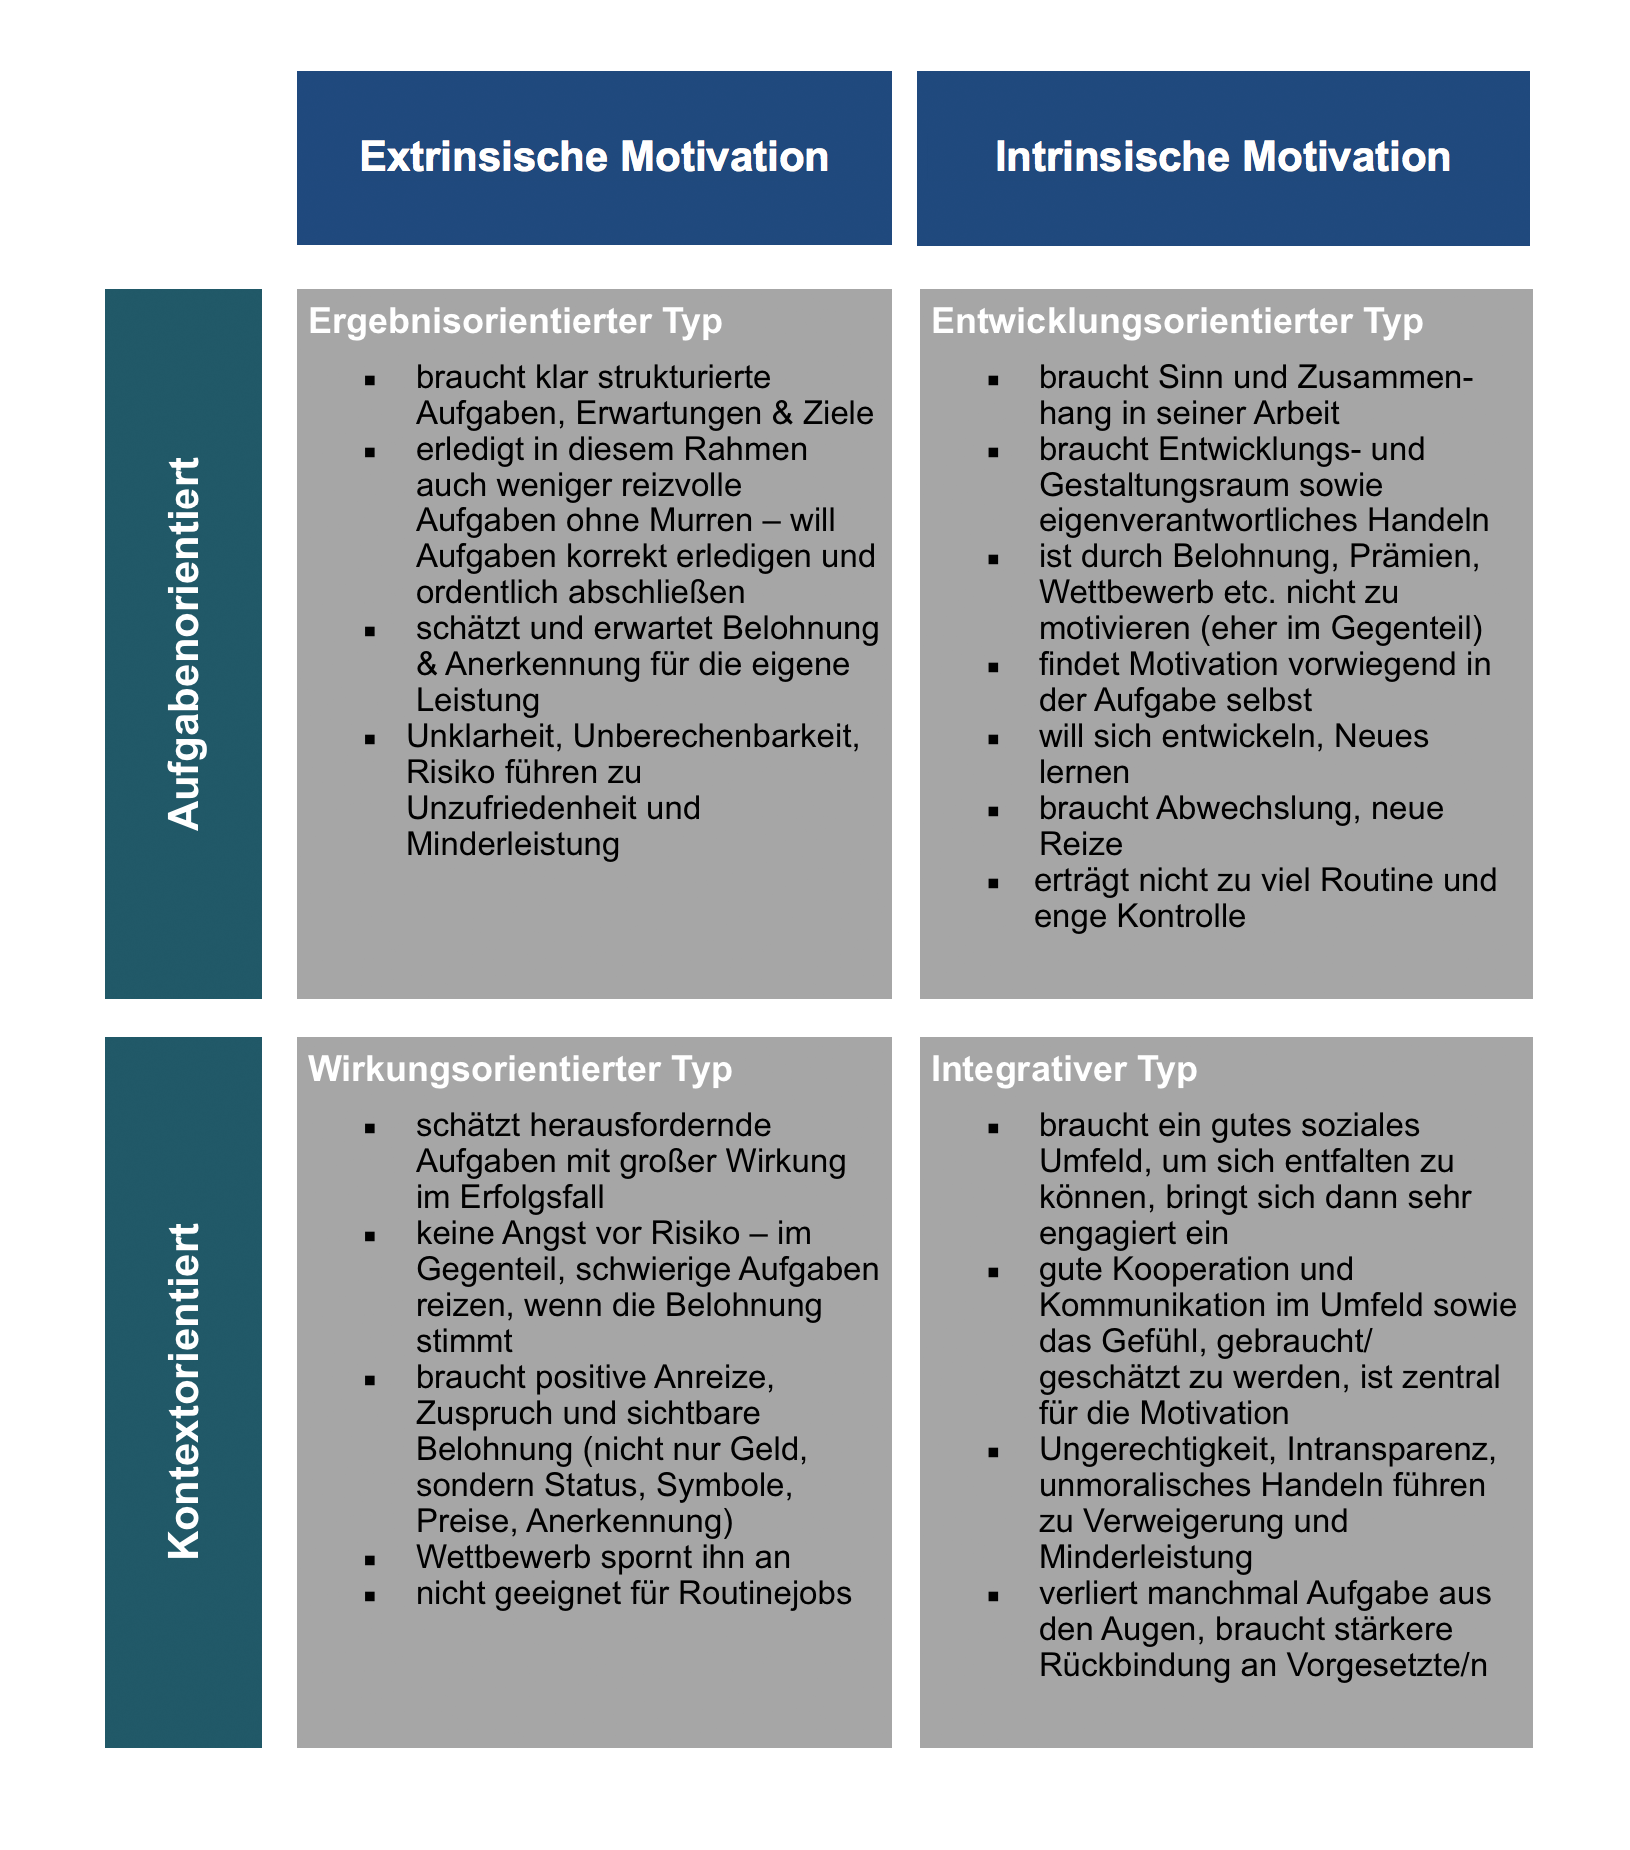 Intrinsische Motivation: Bedeutung und Voraussetzung dafür Was bedeutet int...